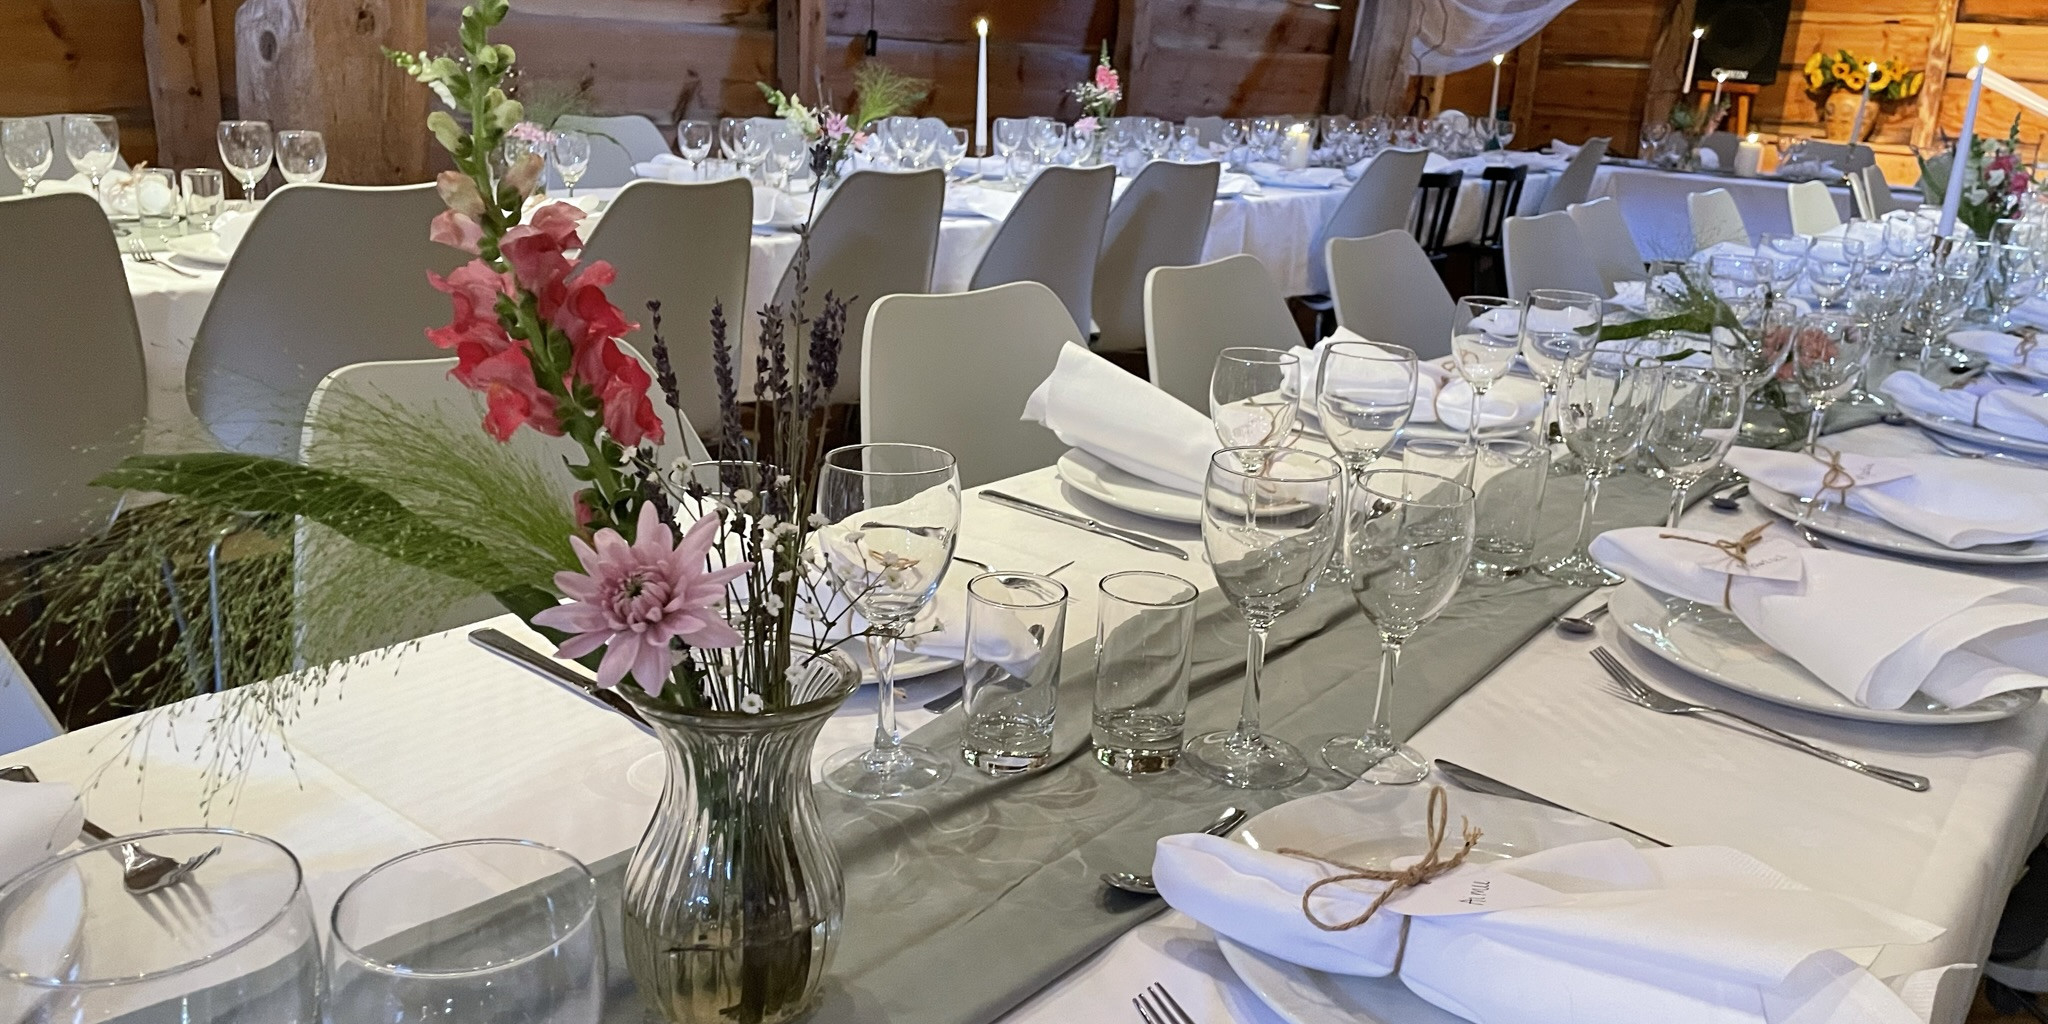 Utsnitt av odekorerte langbord til bryllaup. Borda er pynta med kvite dukar, stearinlys, serviettar med namnelappar og blomar. I bakgrunnen kvit tyll som er festa i tak og lys.